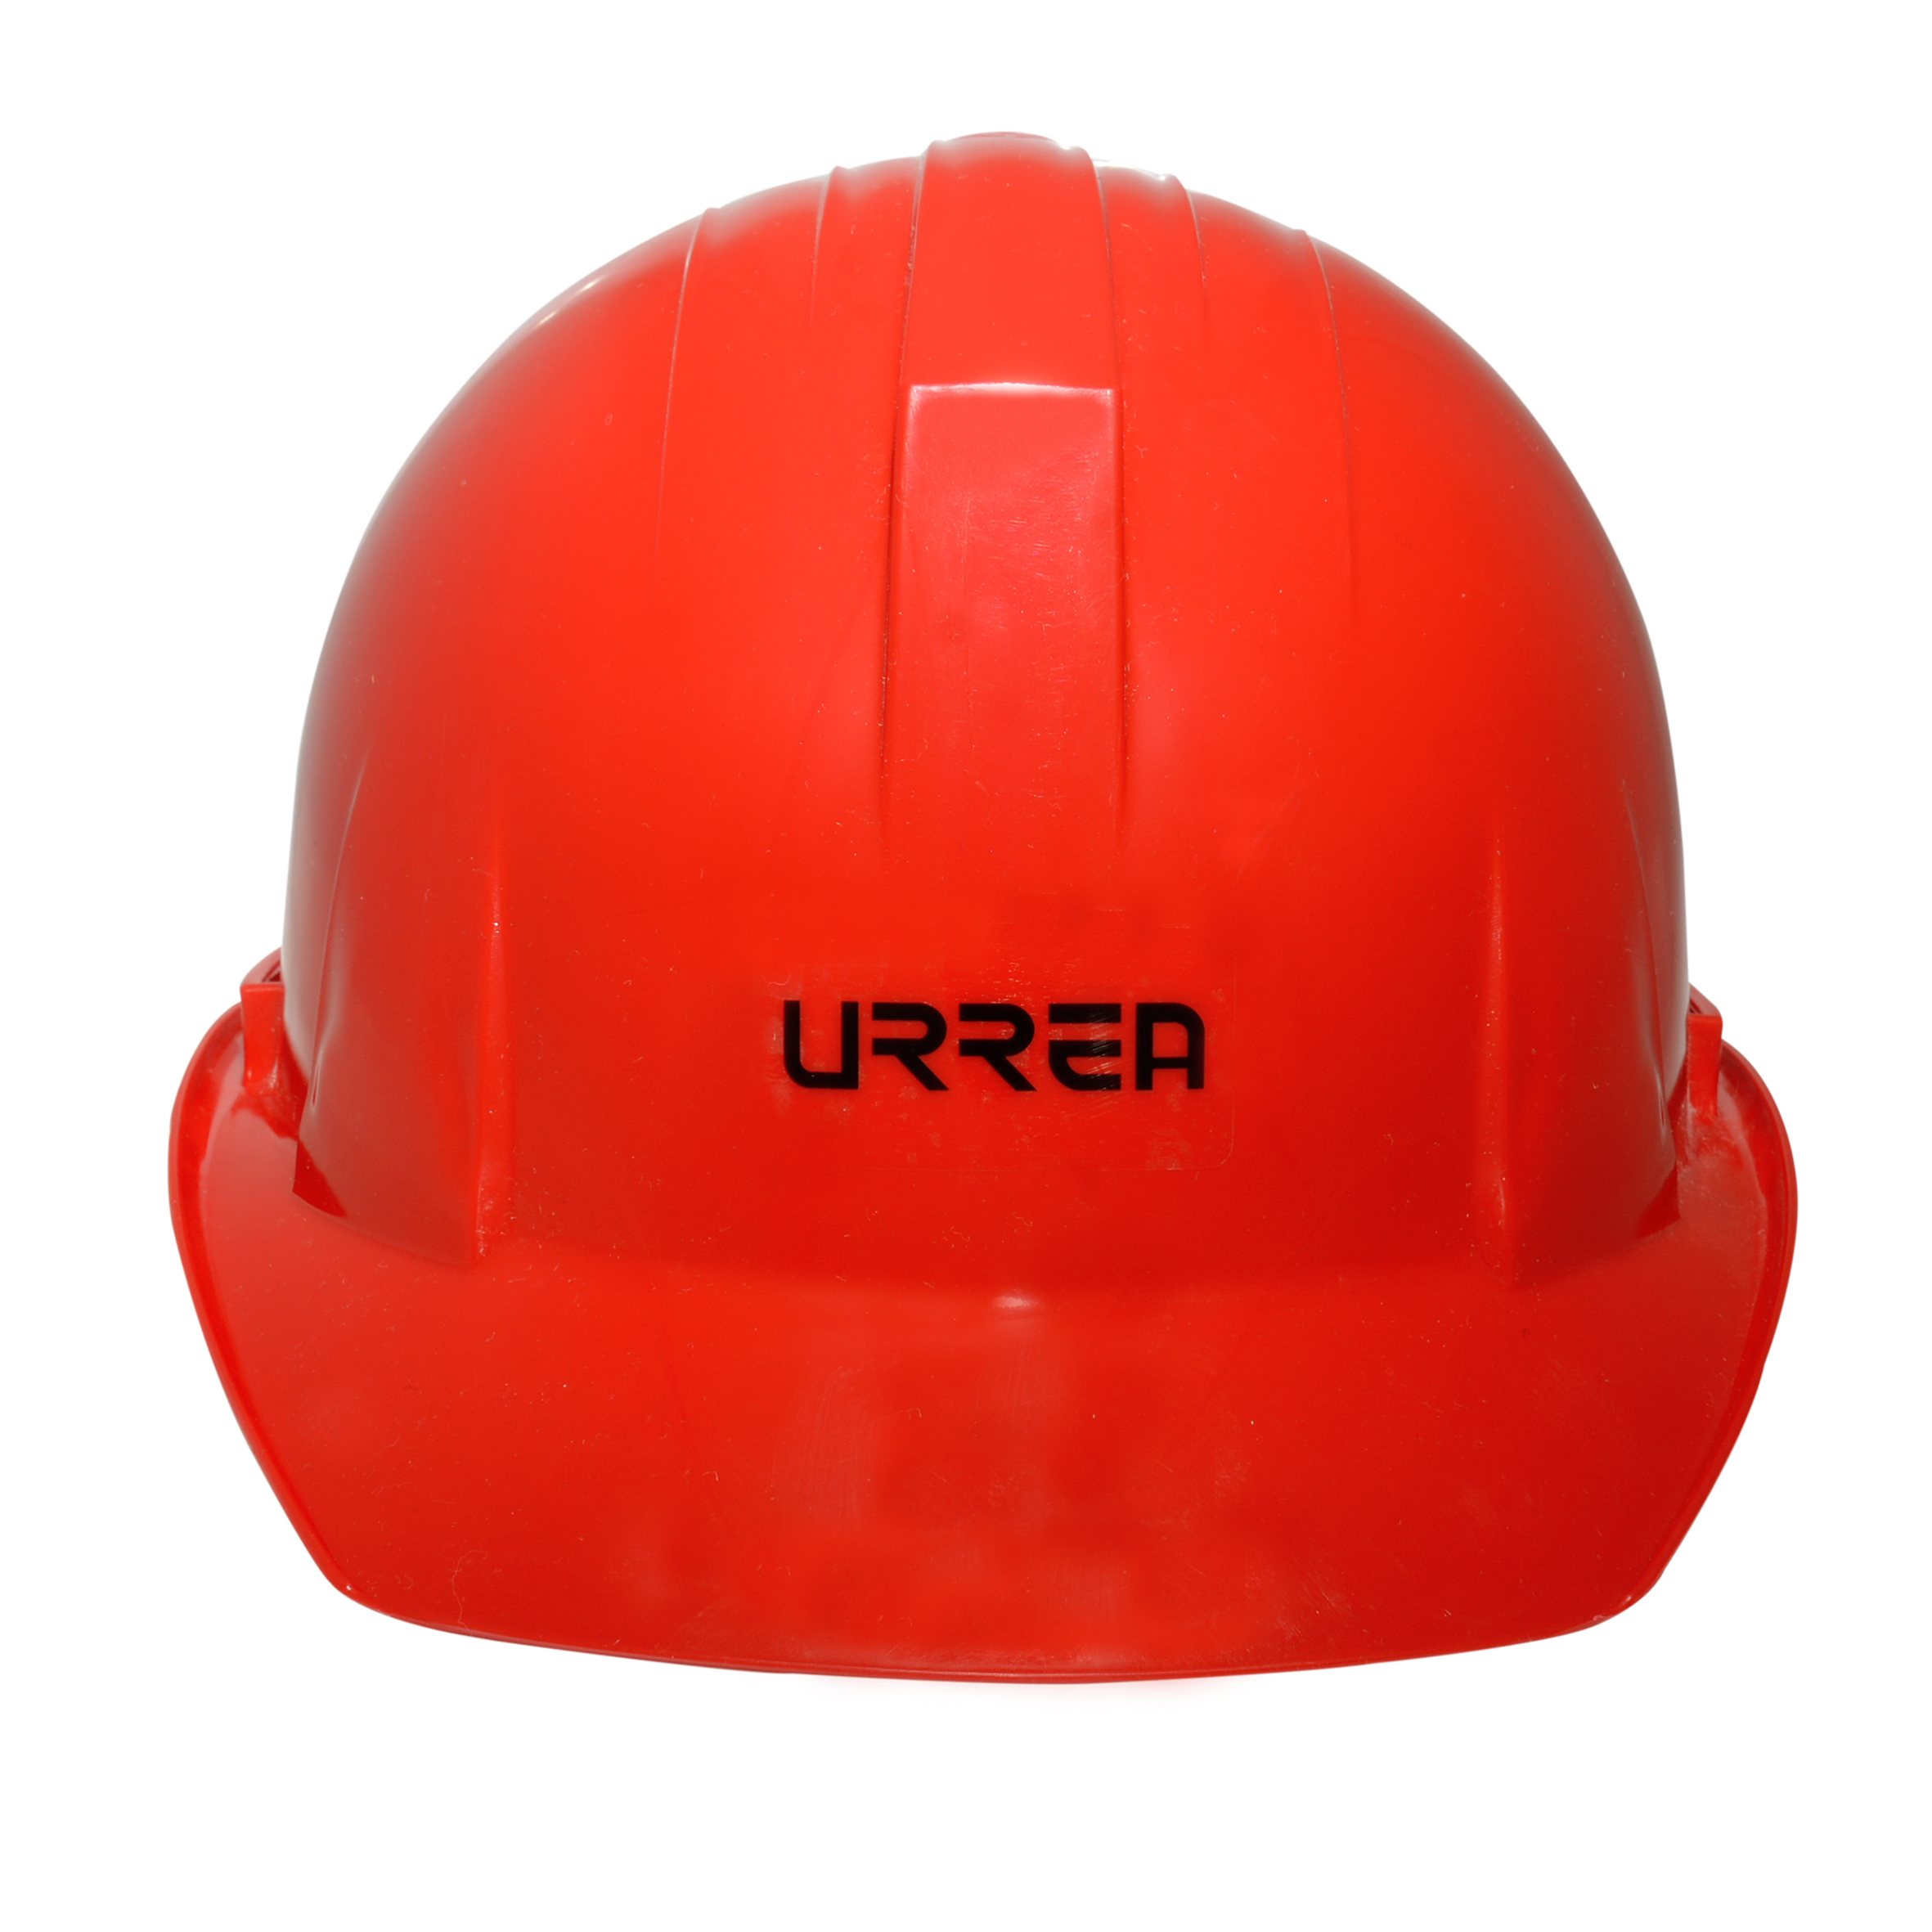 Imagen para Casco de seguridad con ajustede intervalos color rojo de Grupo Urrea